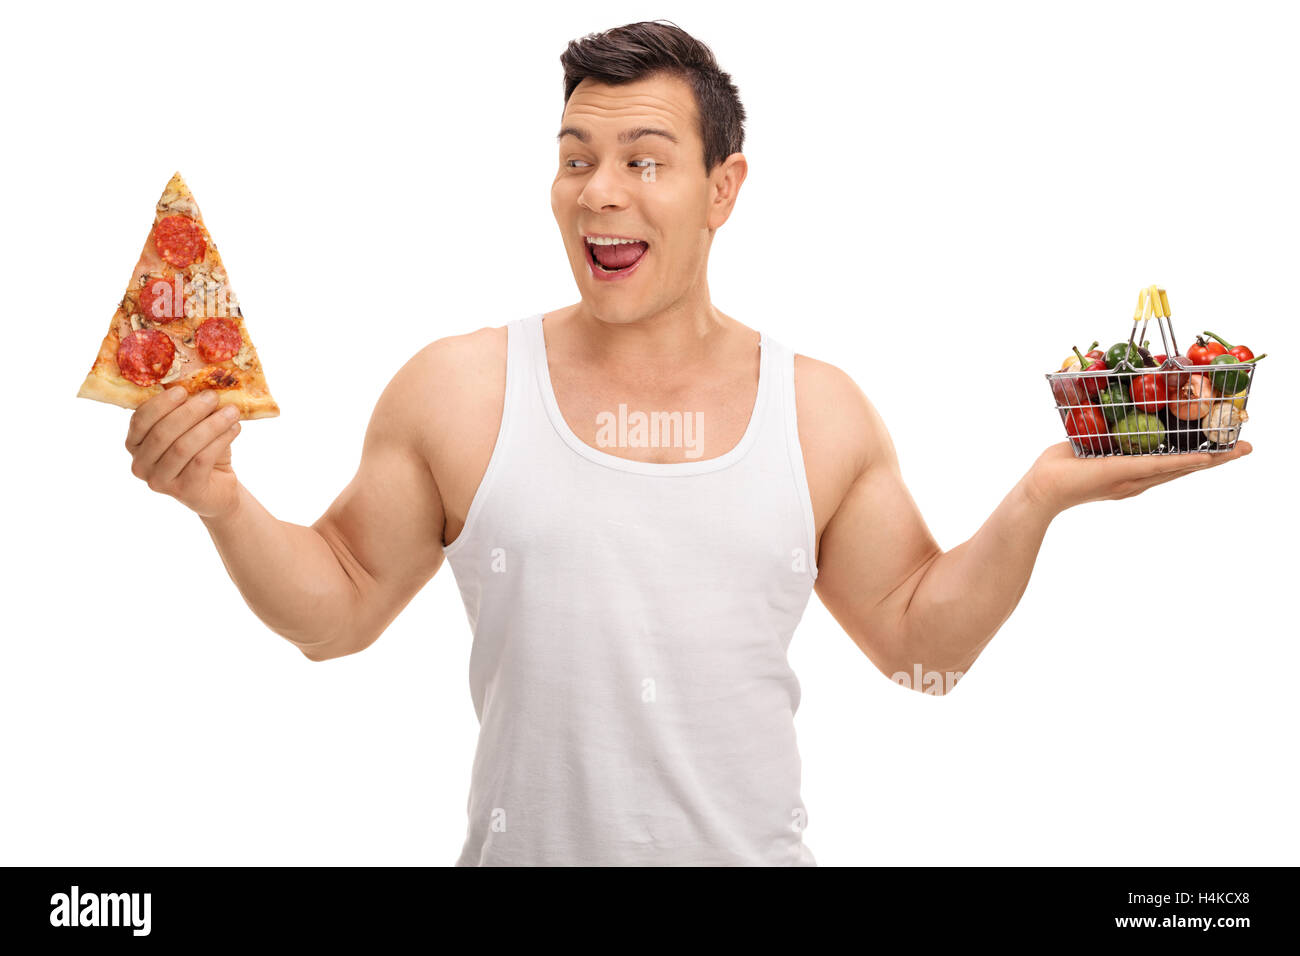 Versucht Mann hält ein Pizzastück und einen kleinen shopping Korb voller Früchte und Gemüse isoliert auf weißem Hintergrund Stockfoto